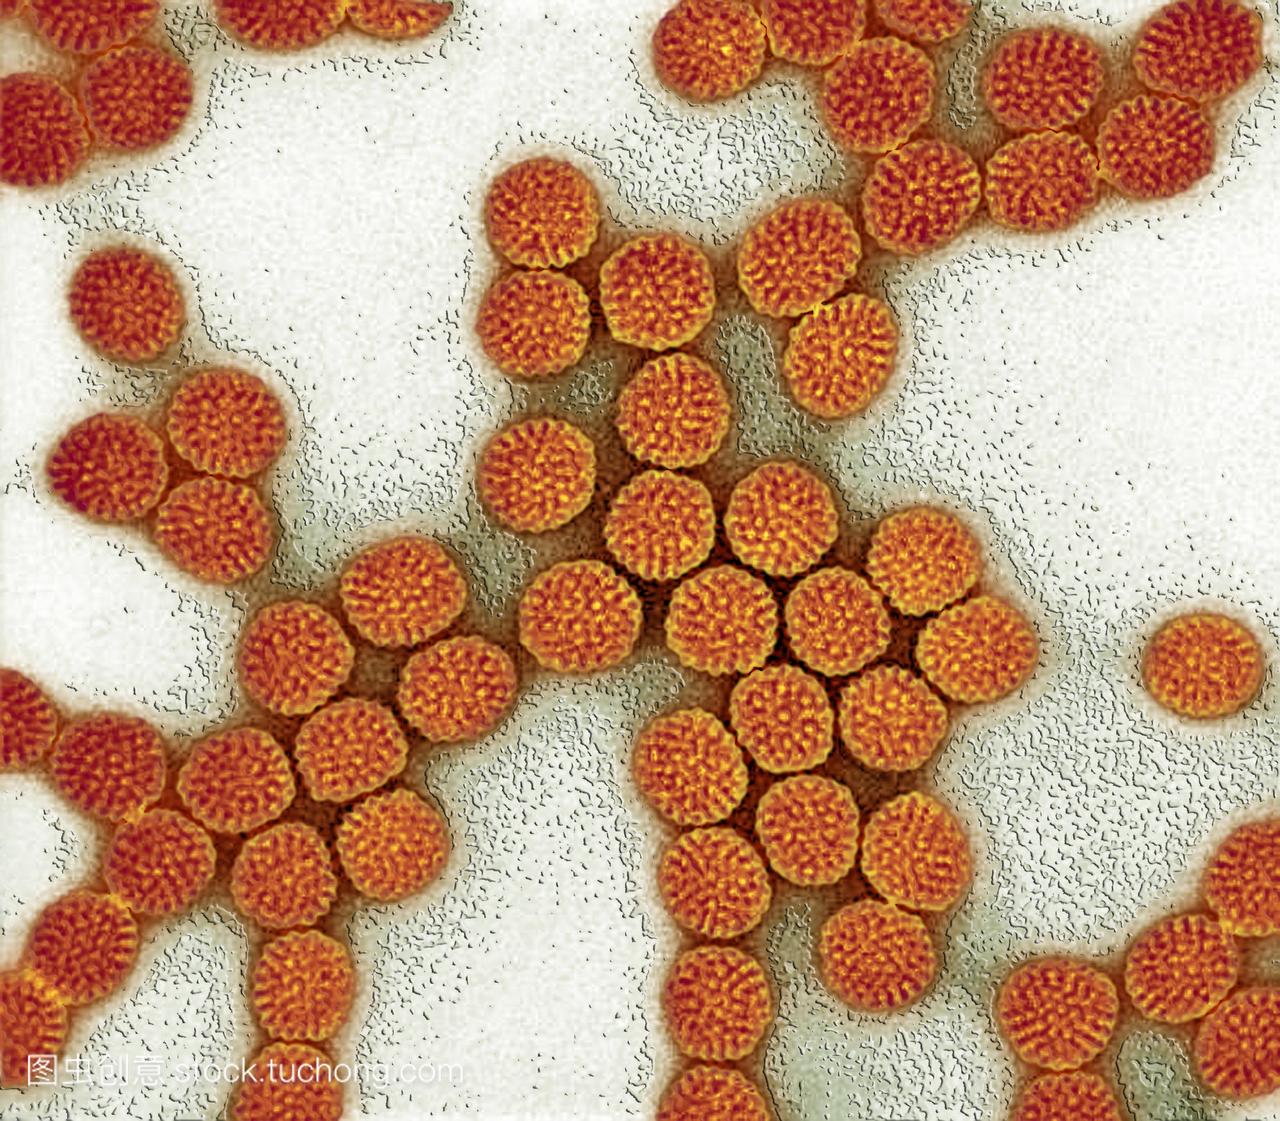 轮状病毒粒子。轮状病毒粒子橙色的彩色透射电